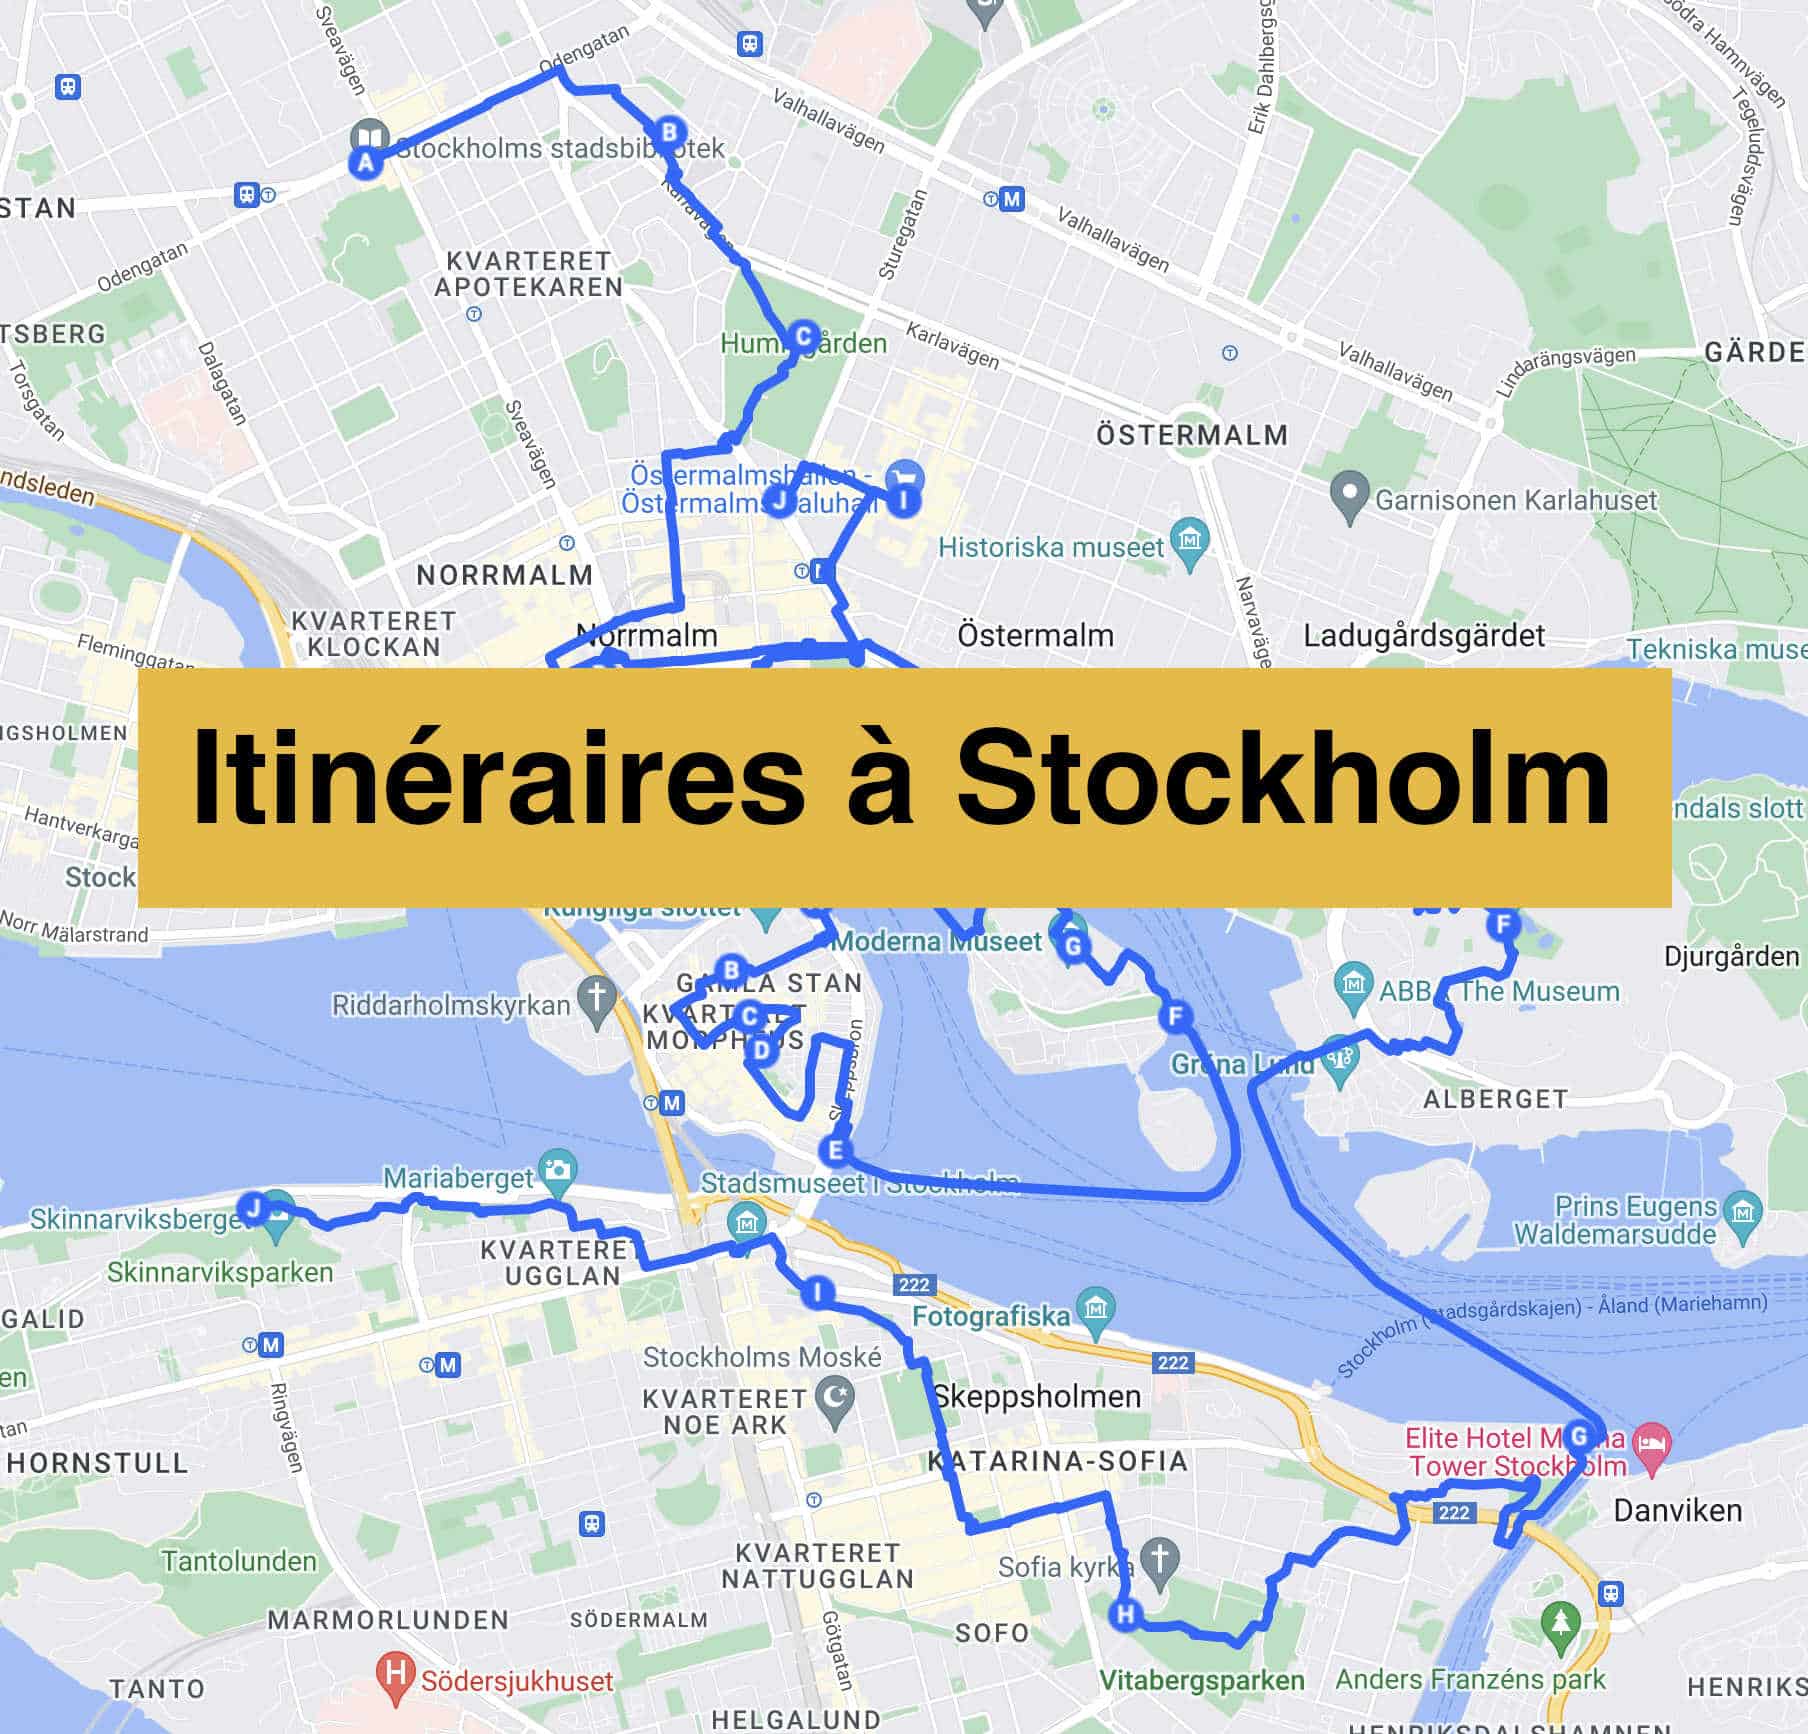 Lire la suite à propos de l’article Itinéraires pour un week-end à Stockholm